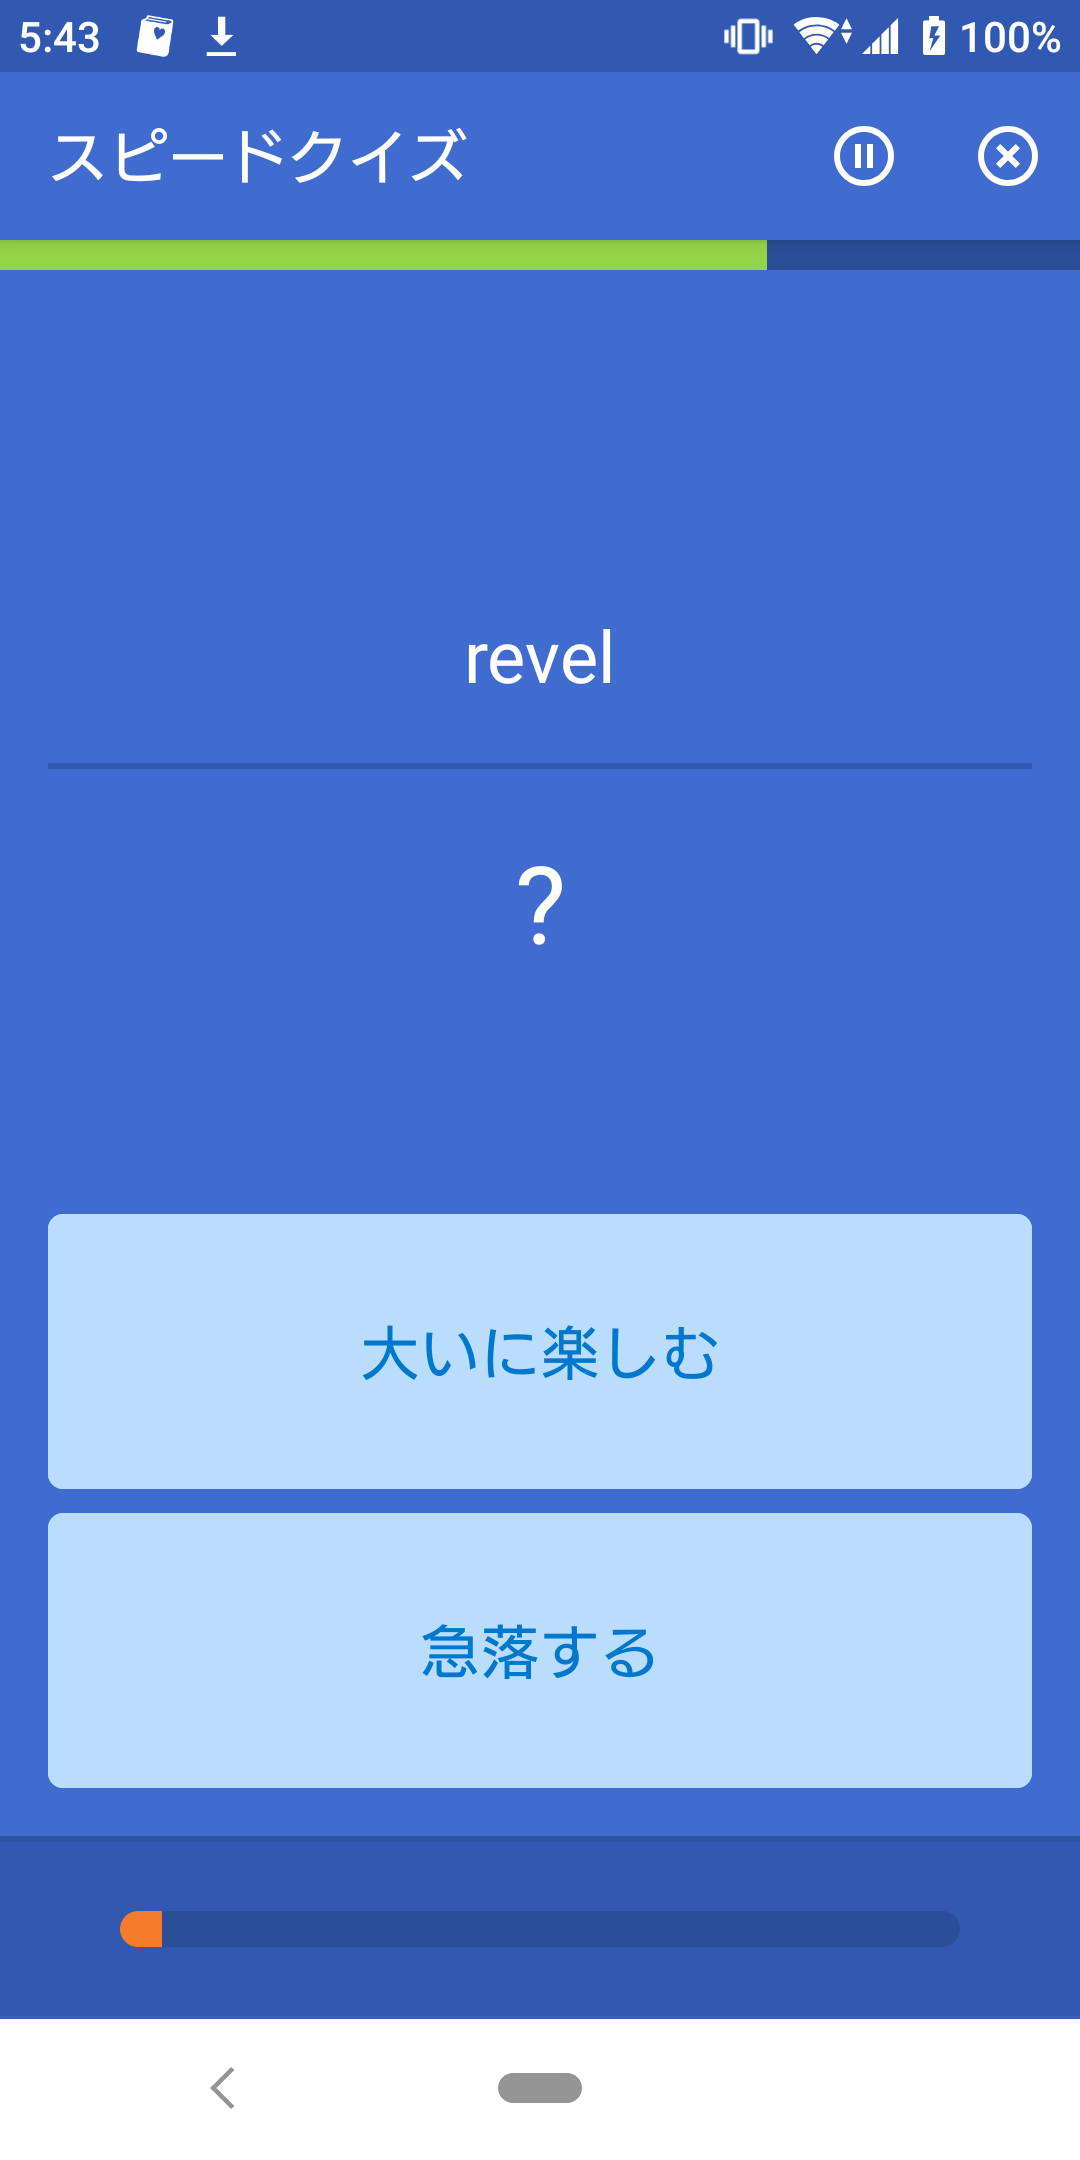 “revel”の意味定着-LじゃなくてR? /英検1級英単語